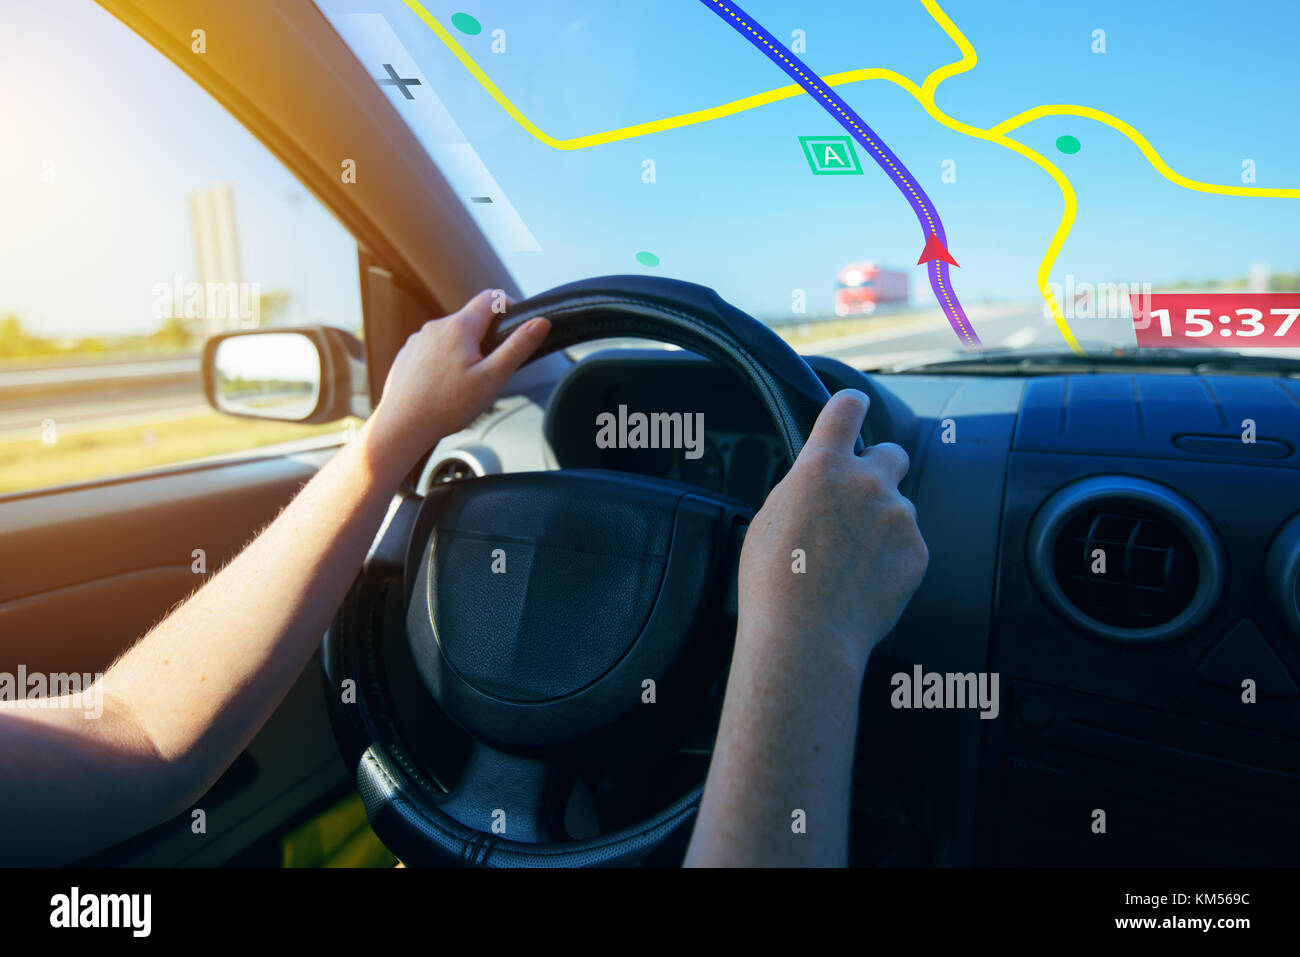 Système de positionnement global (GPS) navigation auto, aide et assistance à l'orientation sur route Banque D'Images